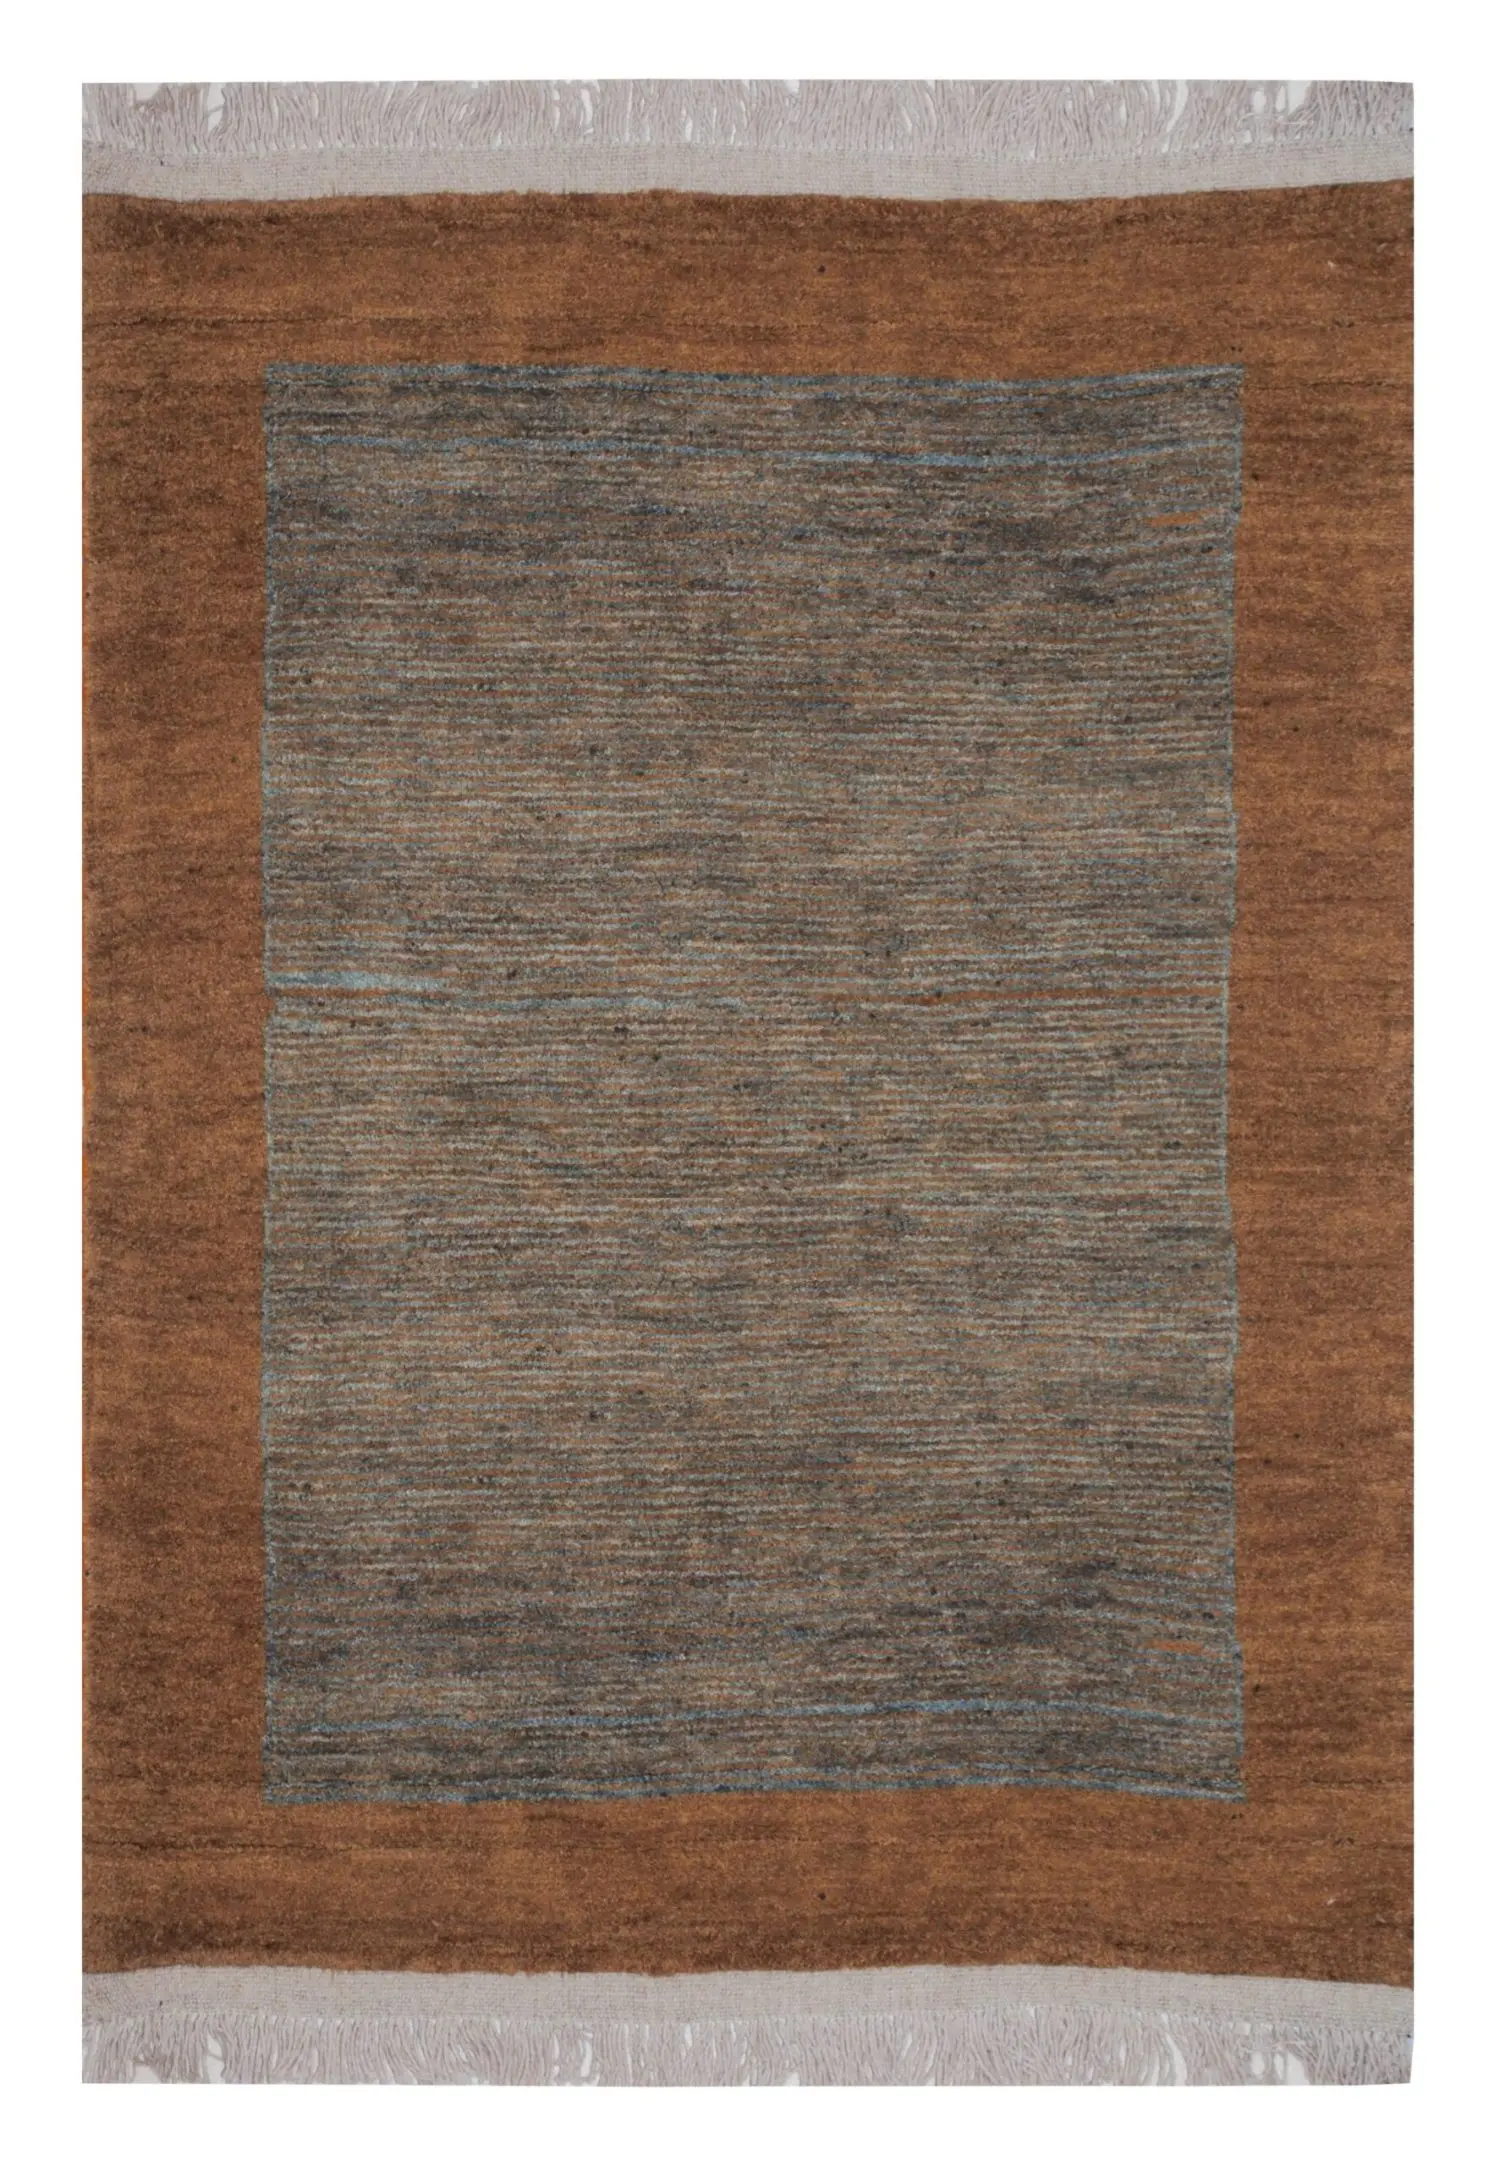 Persian Gabbeh Rug 3' 8" x 5' 6" Wool Handmade Area Rug - Shabahang Royal Carpet